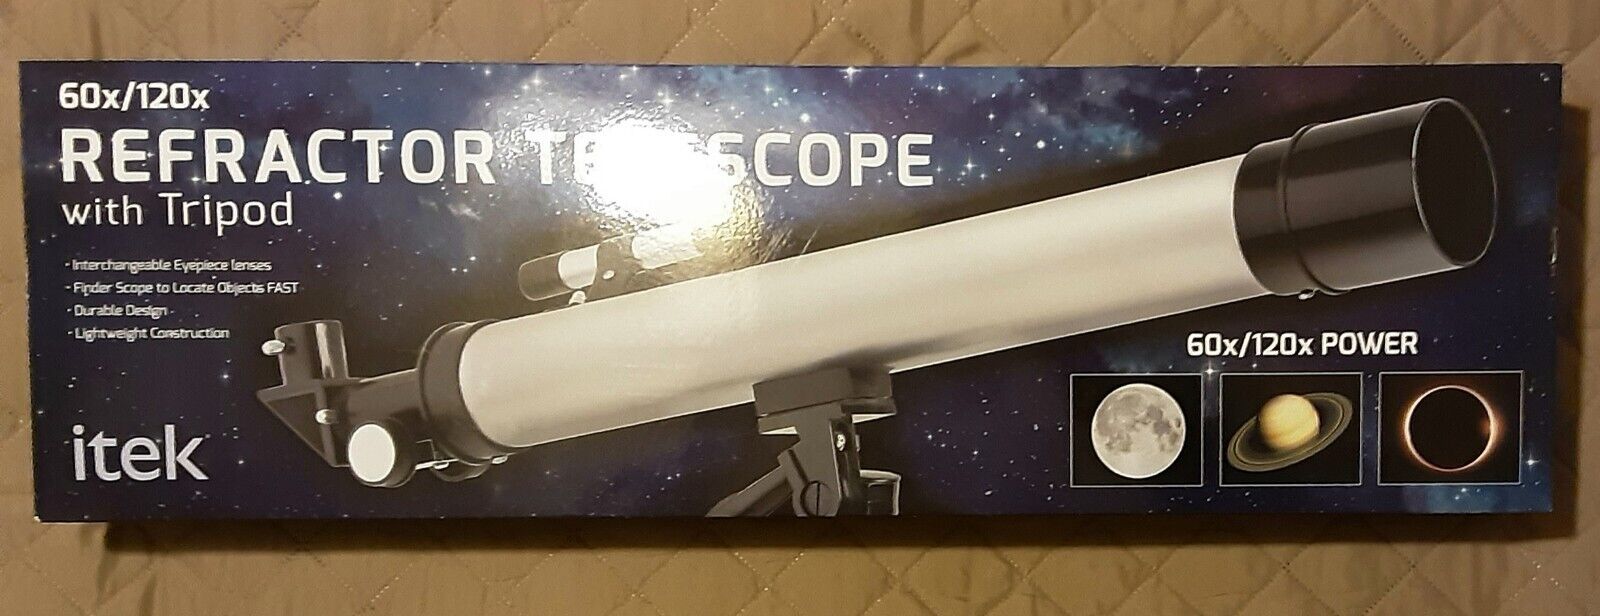 🌟Itek Refractor Telescope 60x/120x Refractor Telescope With Tripod New In Box🌟